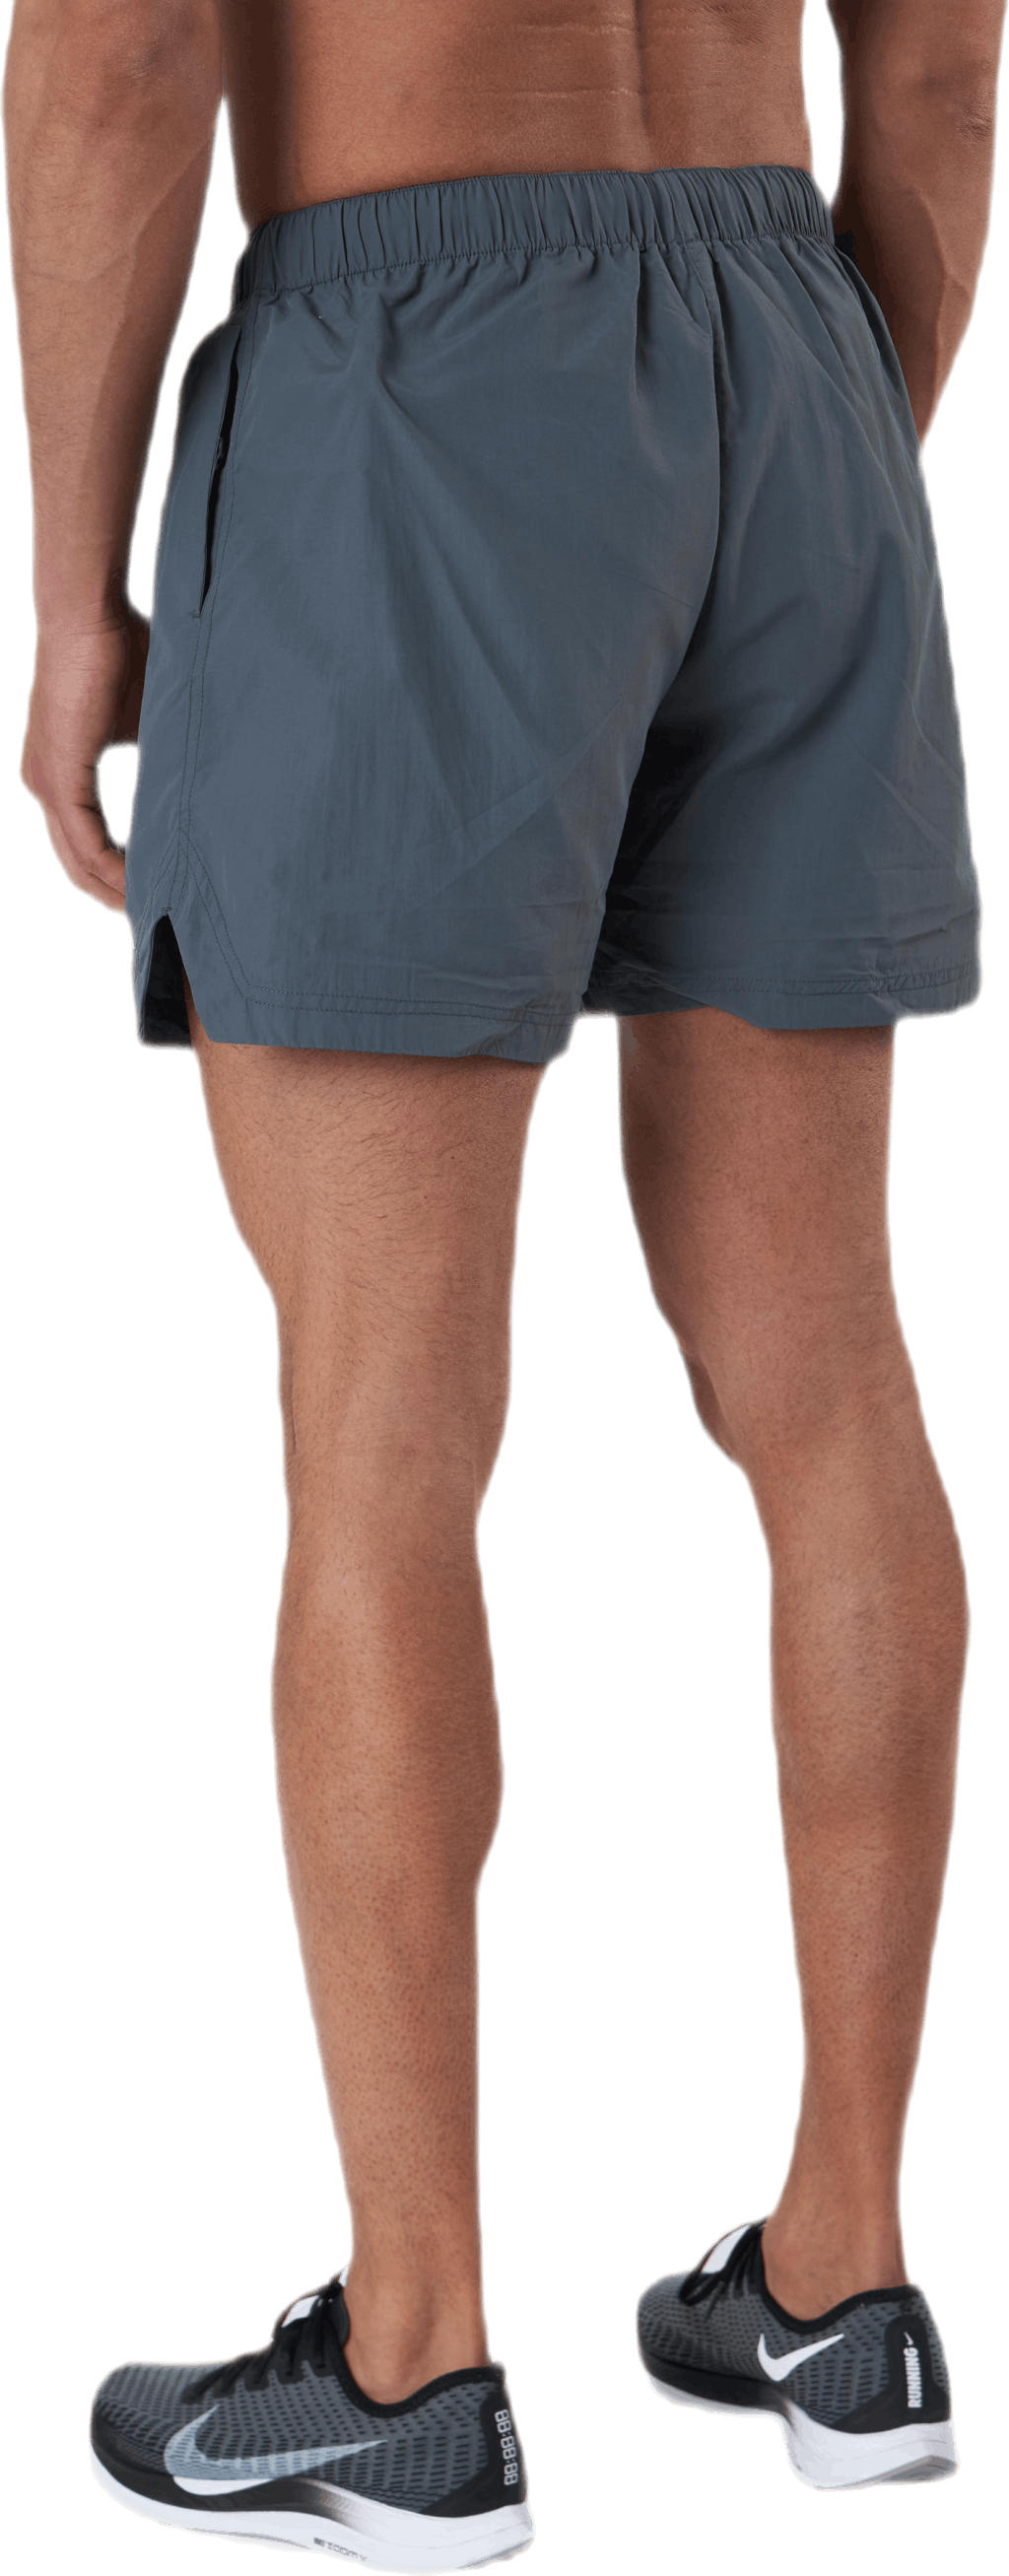 Sthlm Training Shorts Grey